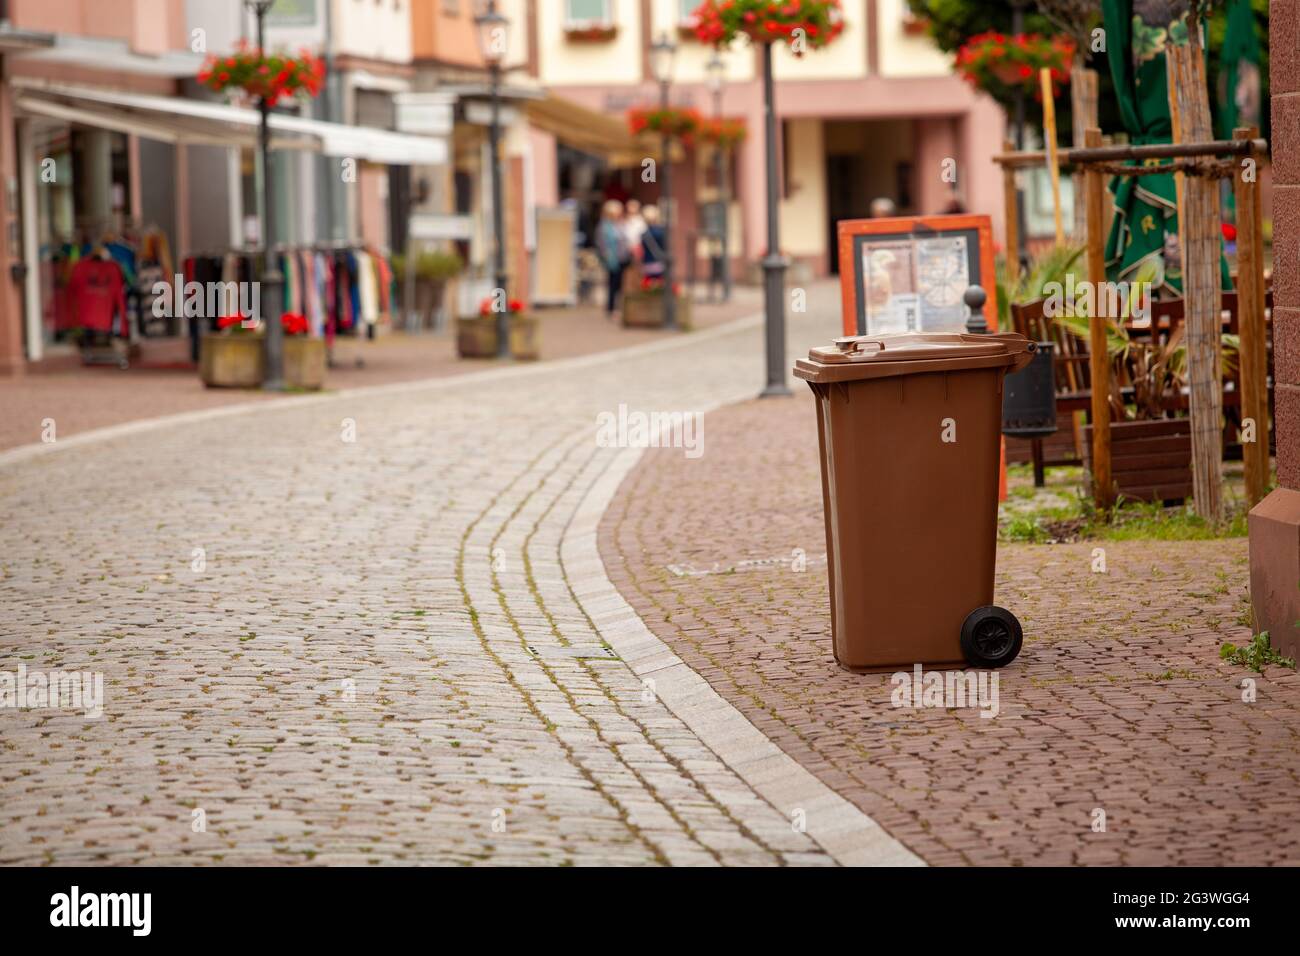 Un contenedor de basura se encuentra en la calle de un europeo Ciudad alemana Foto de stock